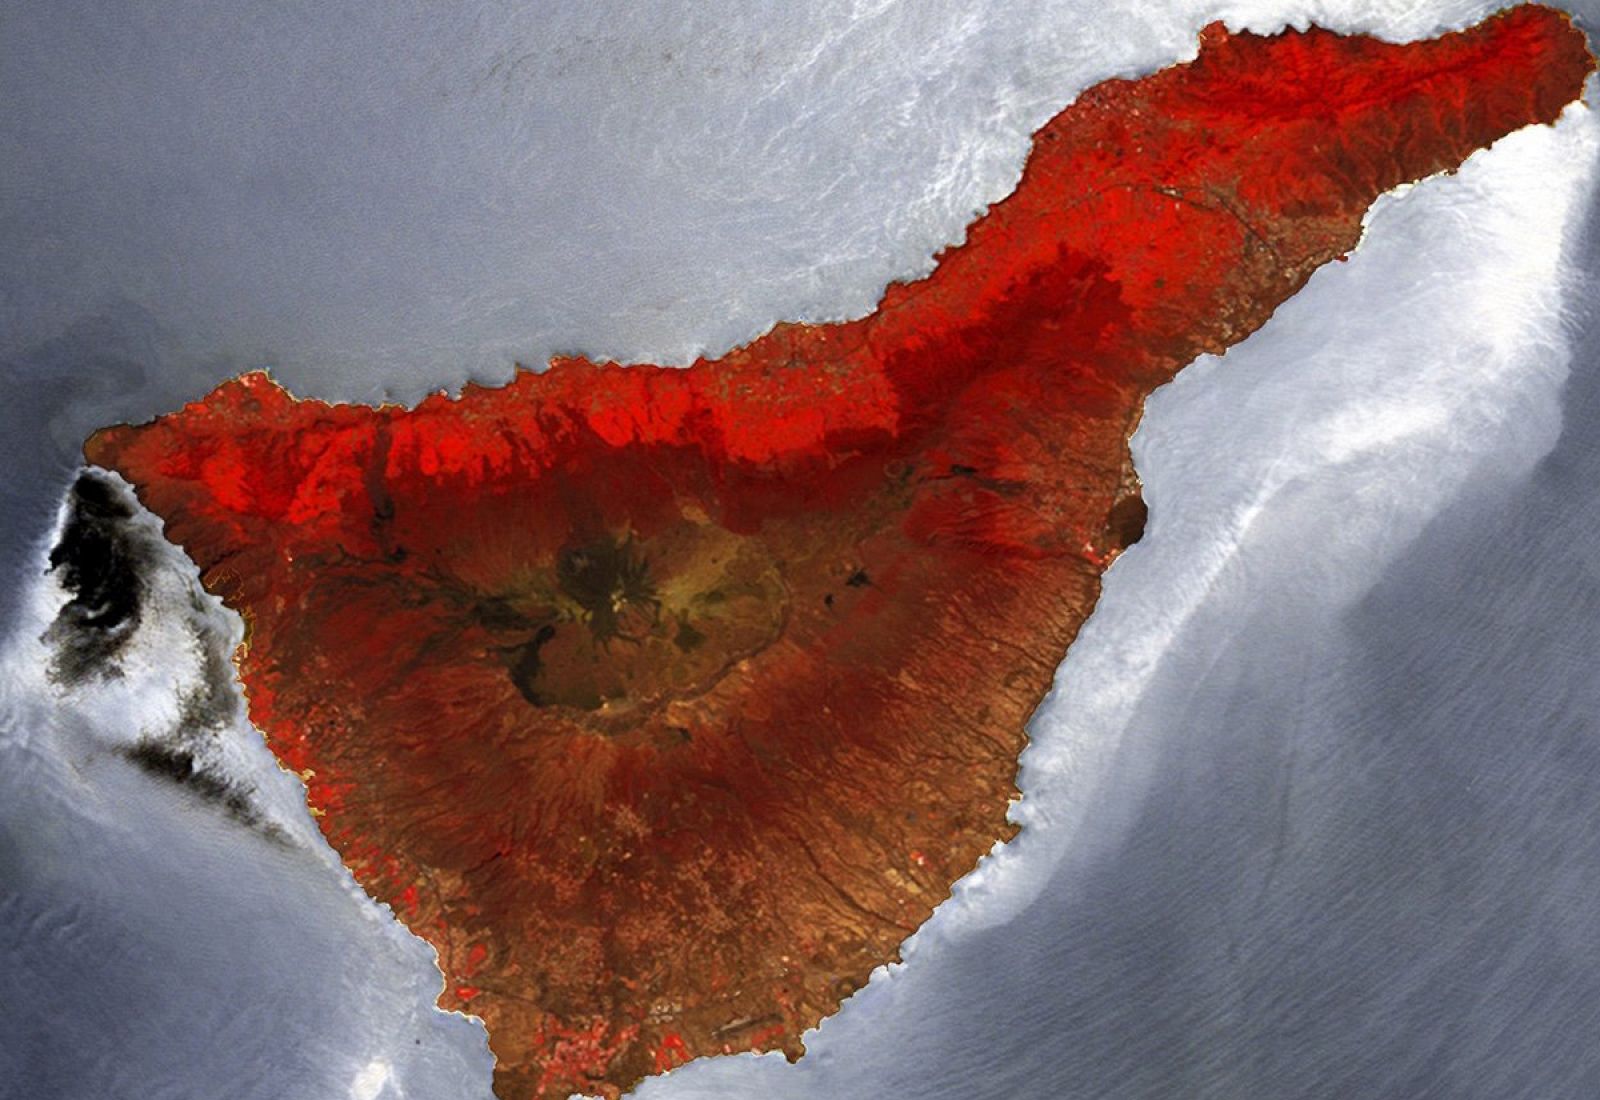 Imagen en infrarrojo facilitada por la Agencia Espacial Europea (ESA), de la isla española de Tenerife.